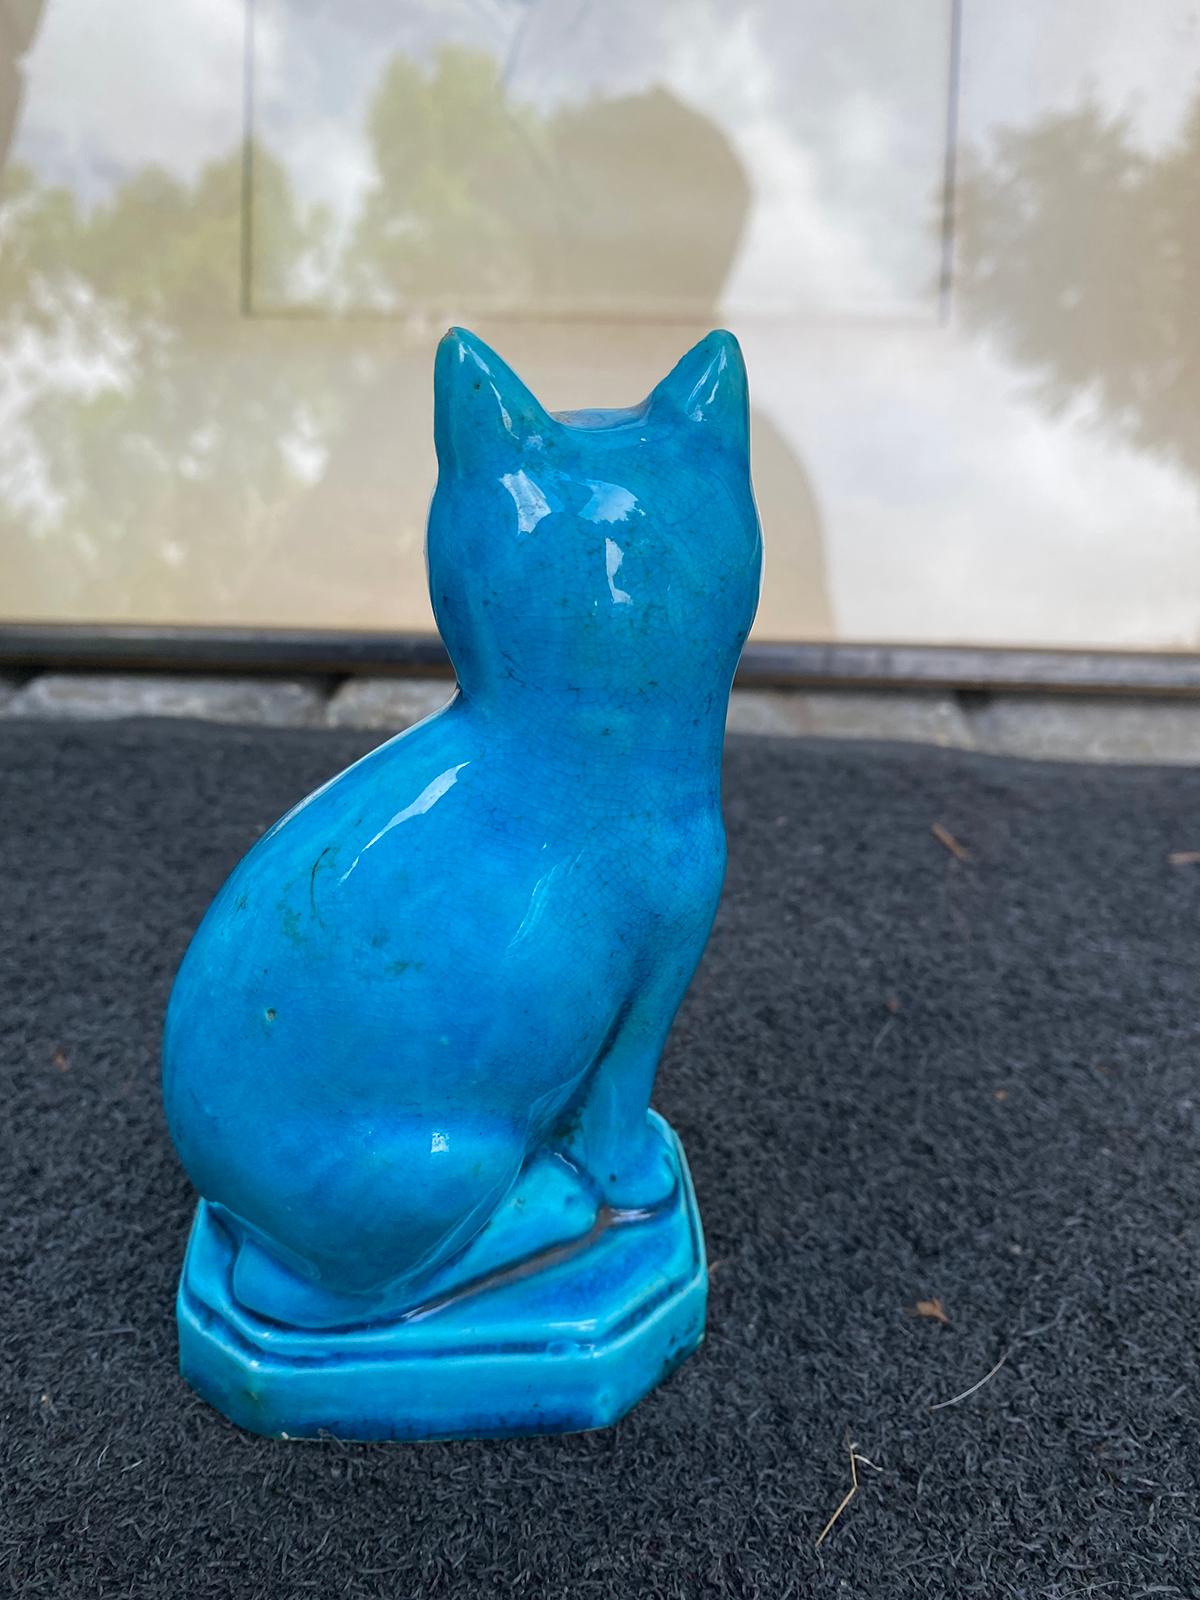 Porcelain Early 20th Century Chinese Turquoise Blue Glazed Cat, Impressed 'China' Mark